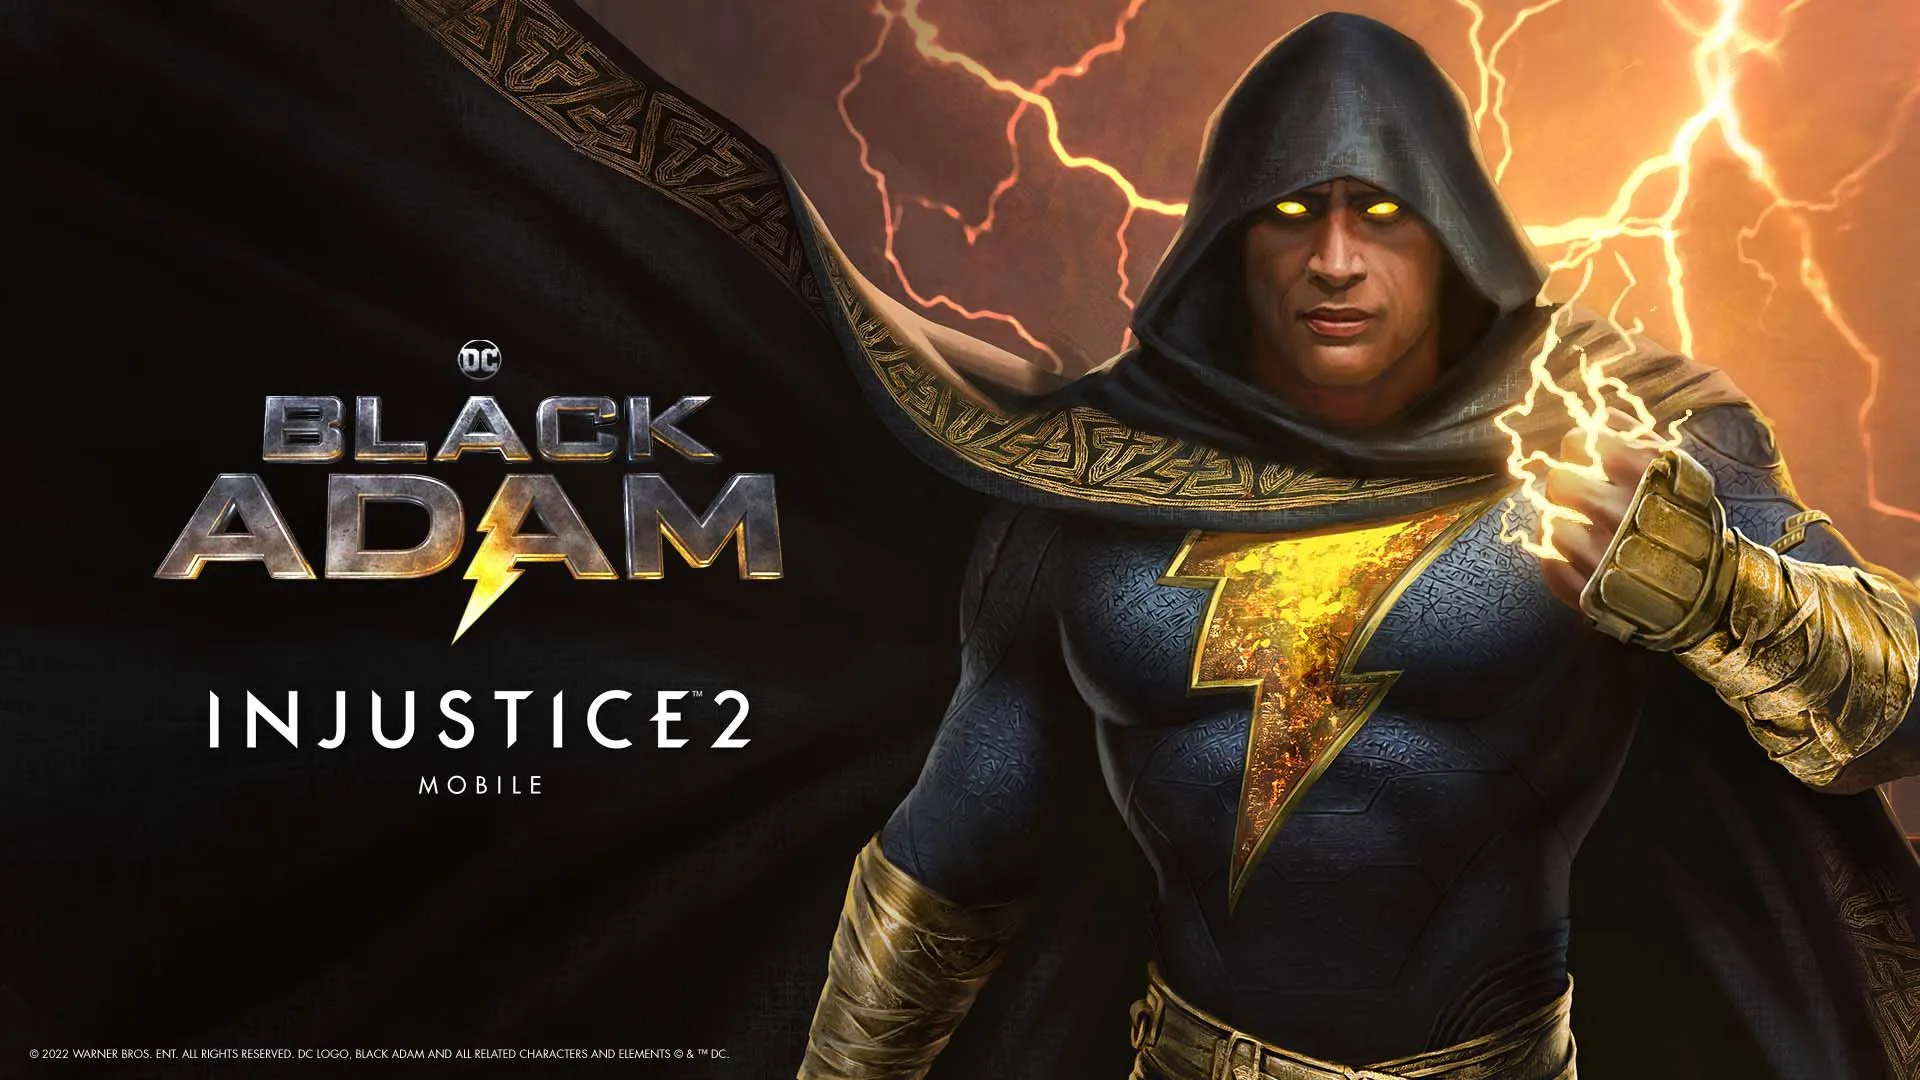 Injustice 2 Mobile adds Black Adam